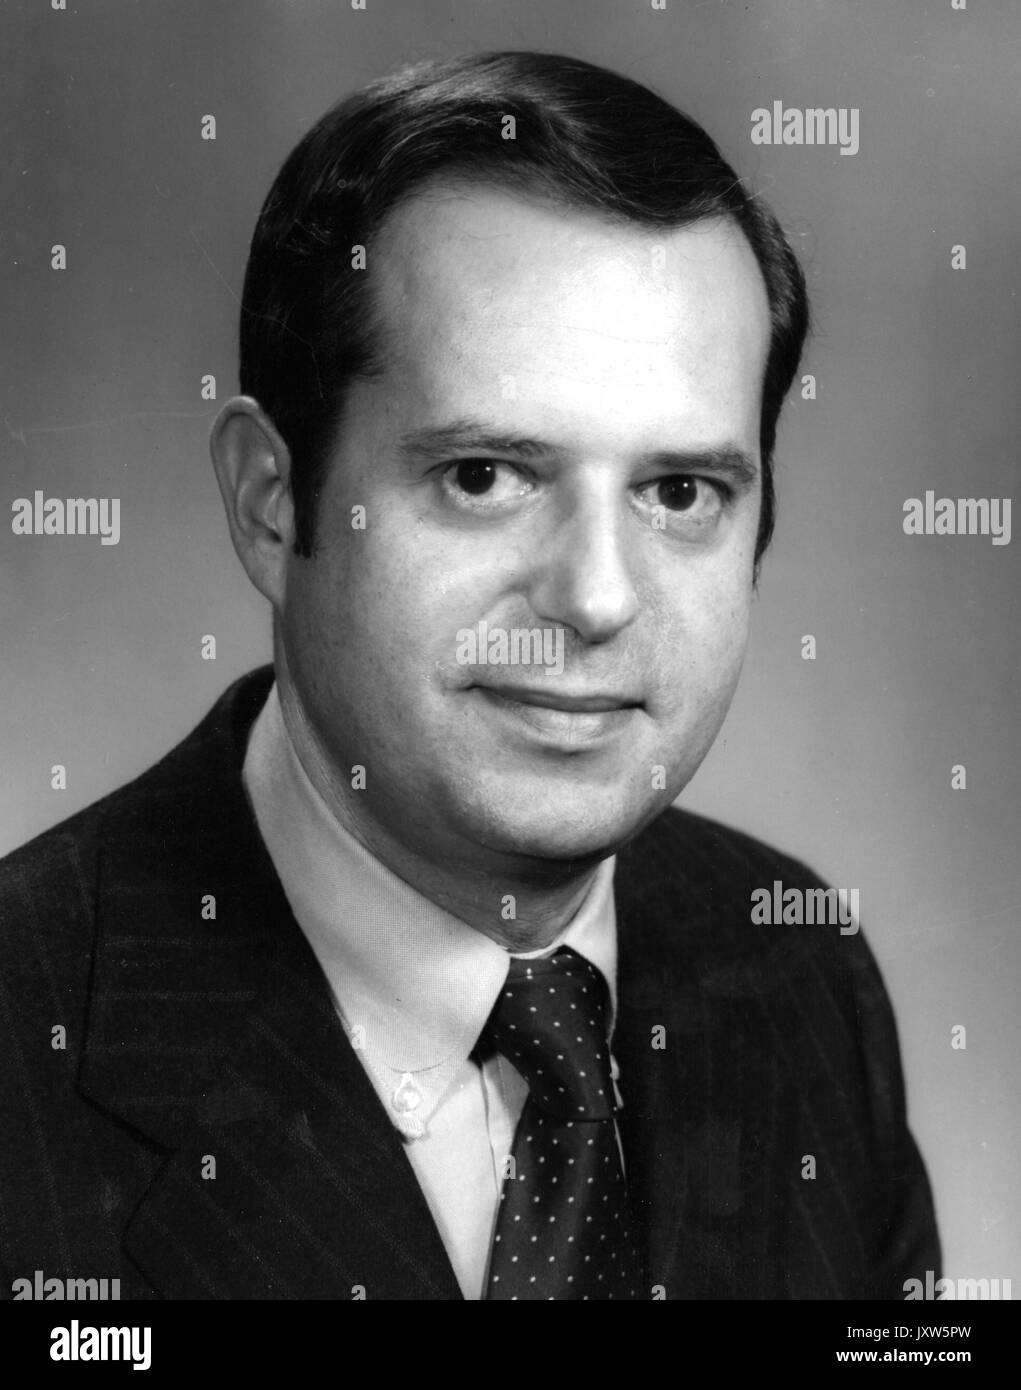 Steven Muller, portrait Fotografie, Schultern, drei Viertel, 45 Jahre alt, 1972. Stockfoto